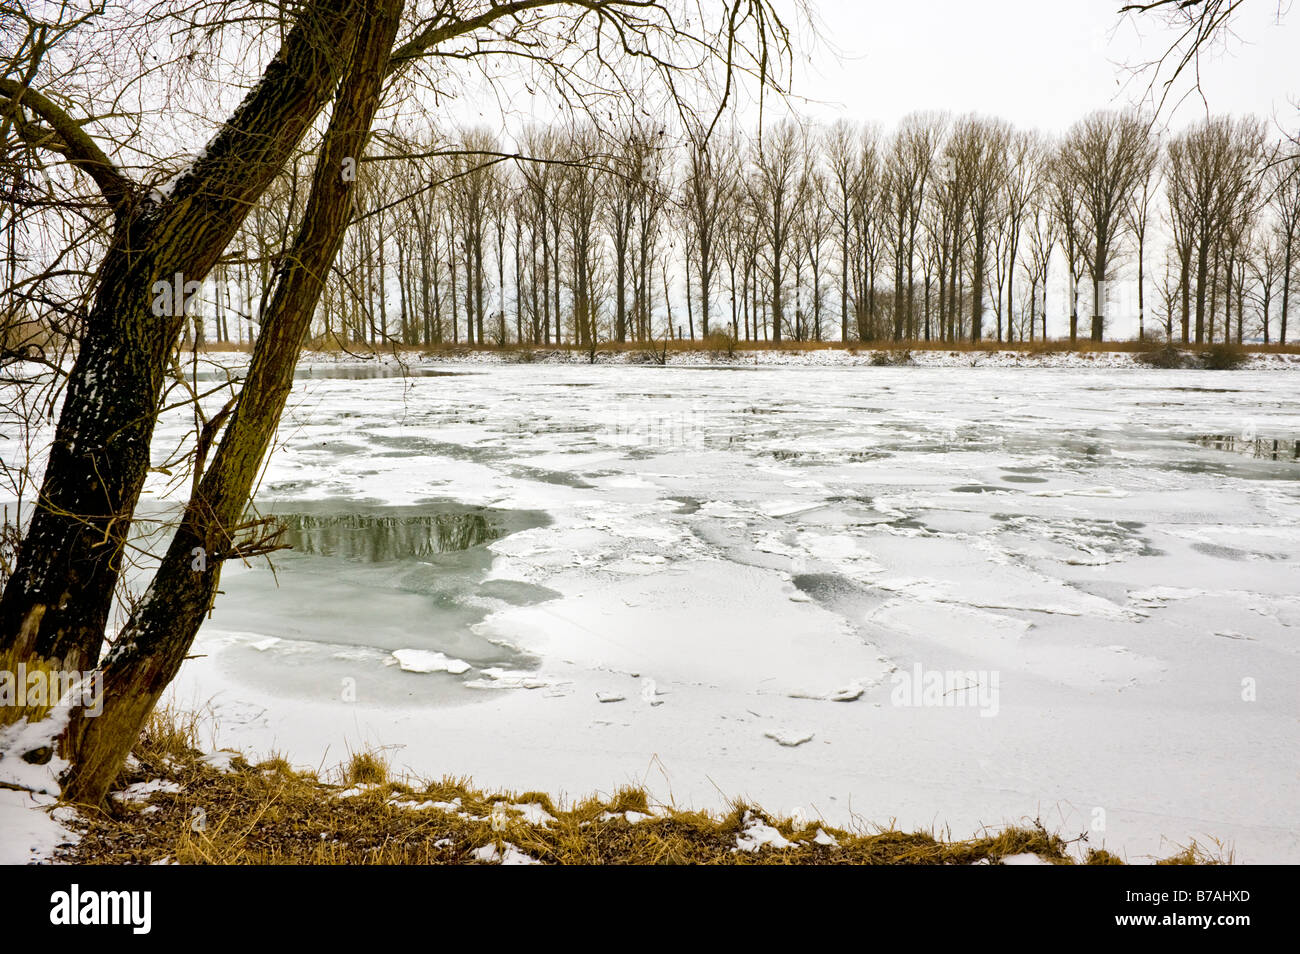 Naturaleza del paisaje congelado témpano de témpanos de tierra Danubio el río donau bancos invierno invierno blanco de nieve helada hielo agua fría árboles Foto de stock